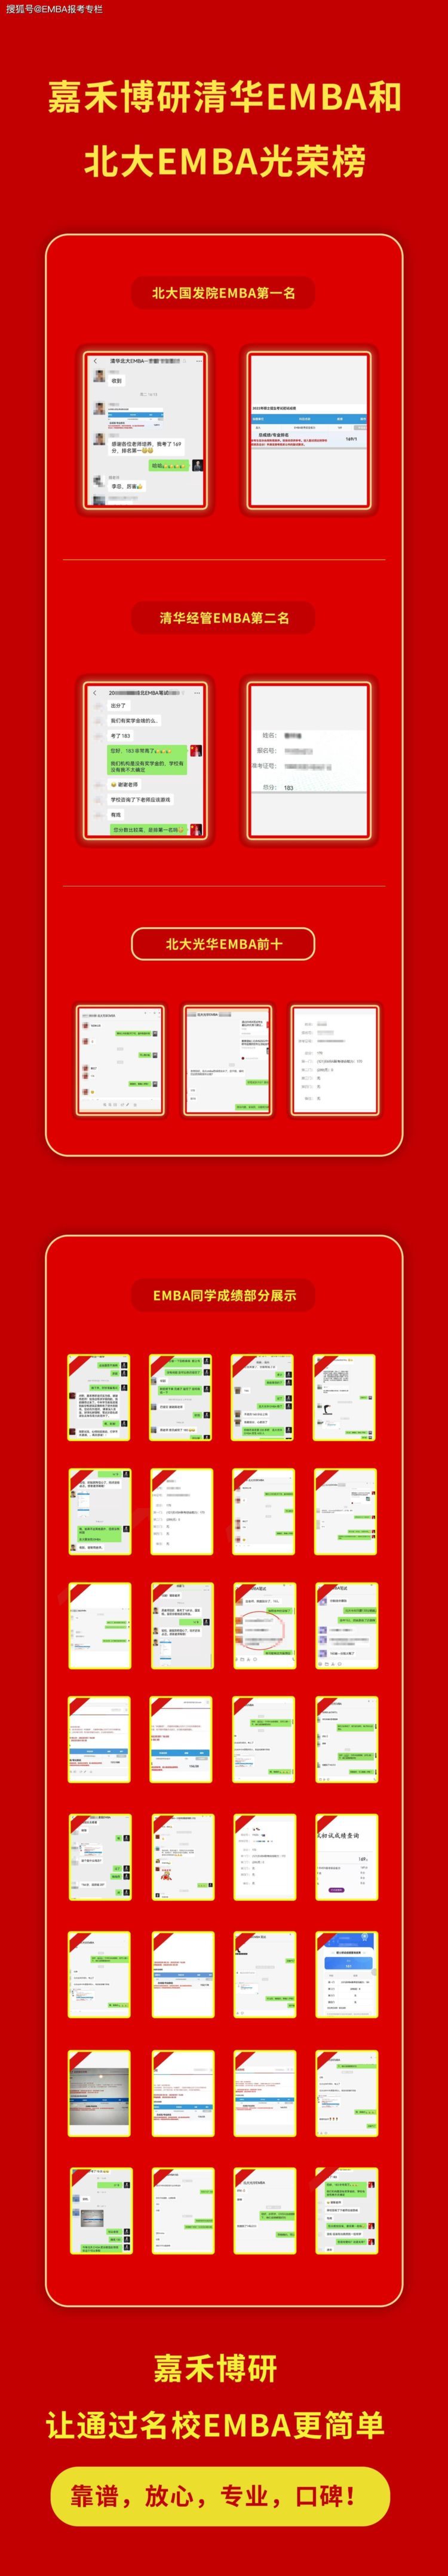 一文解析深圳EMBA院校排名和申请难度